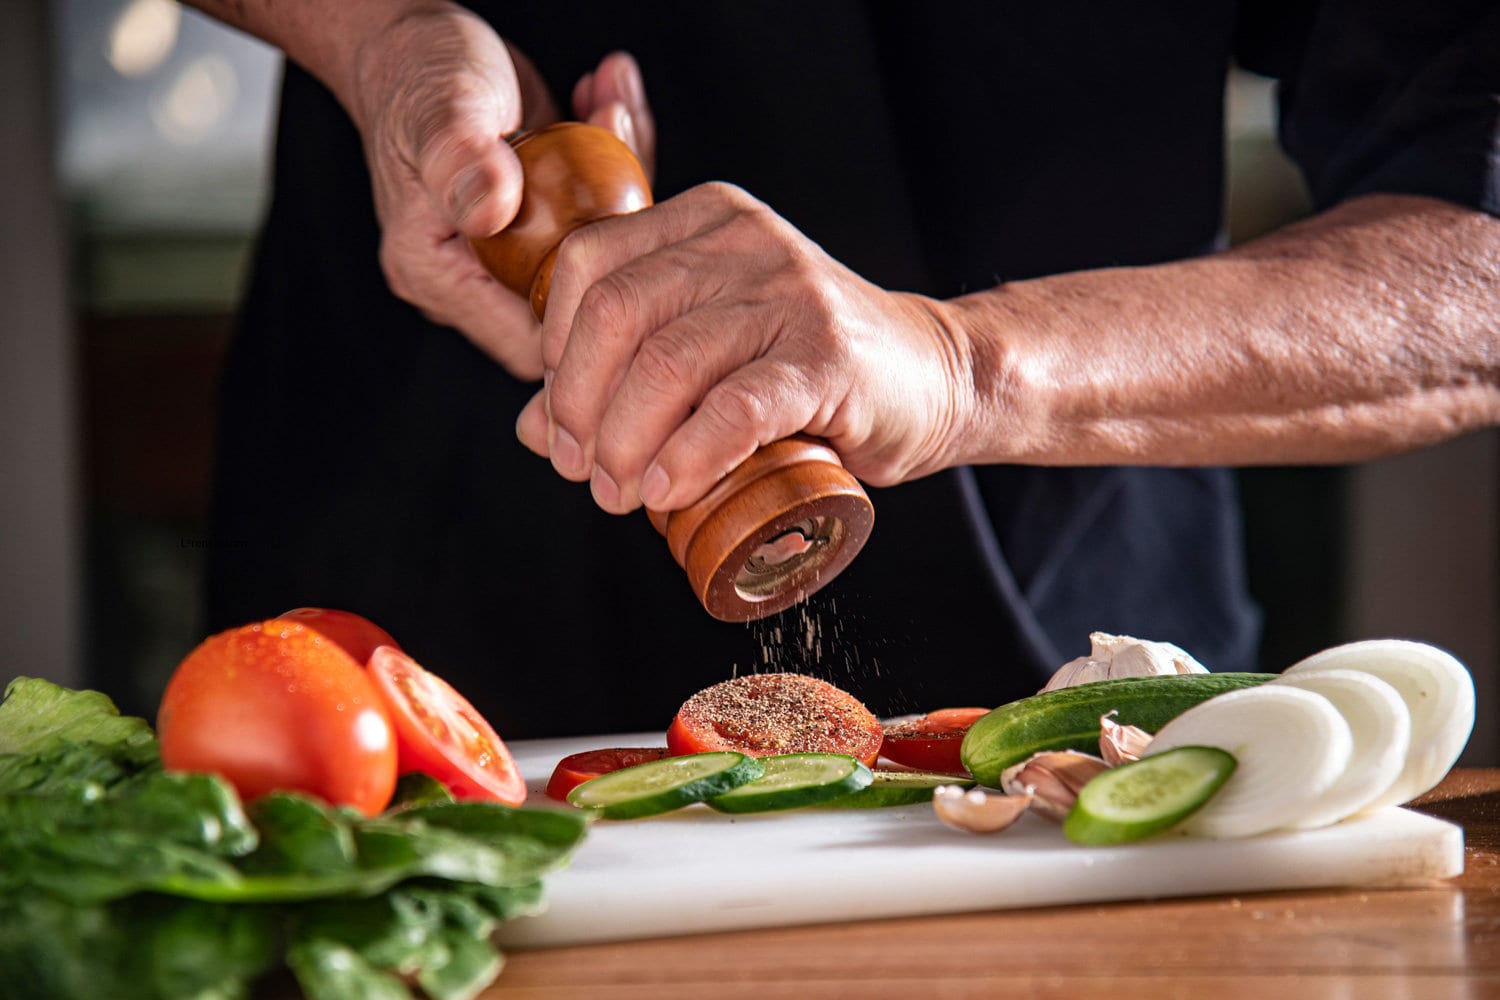 man using pepper grinder for cooking vegetable salad